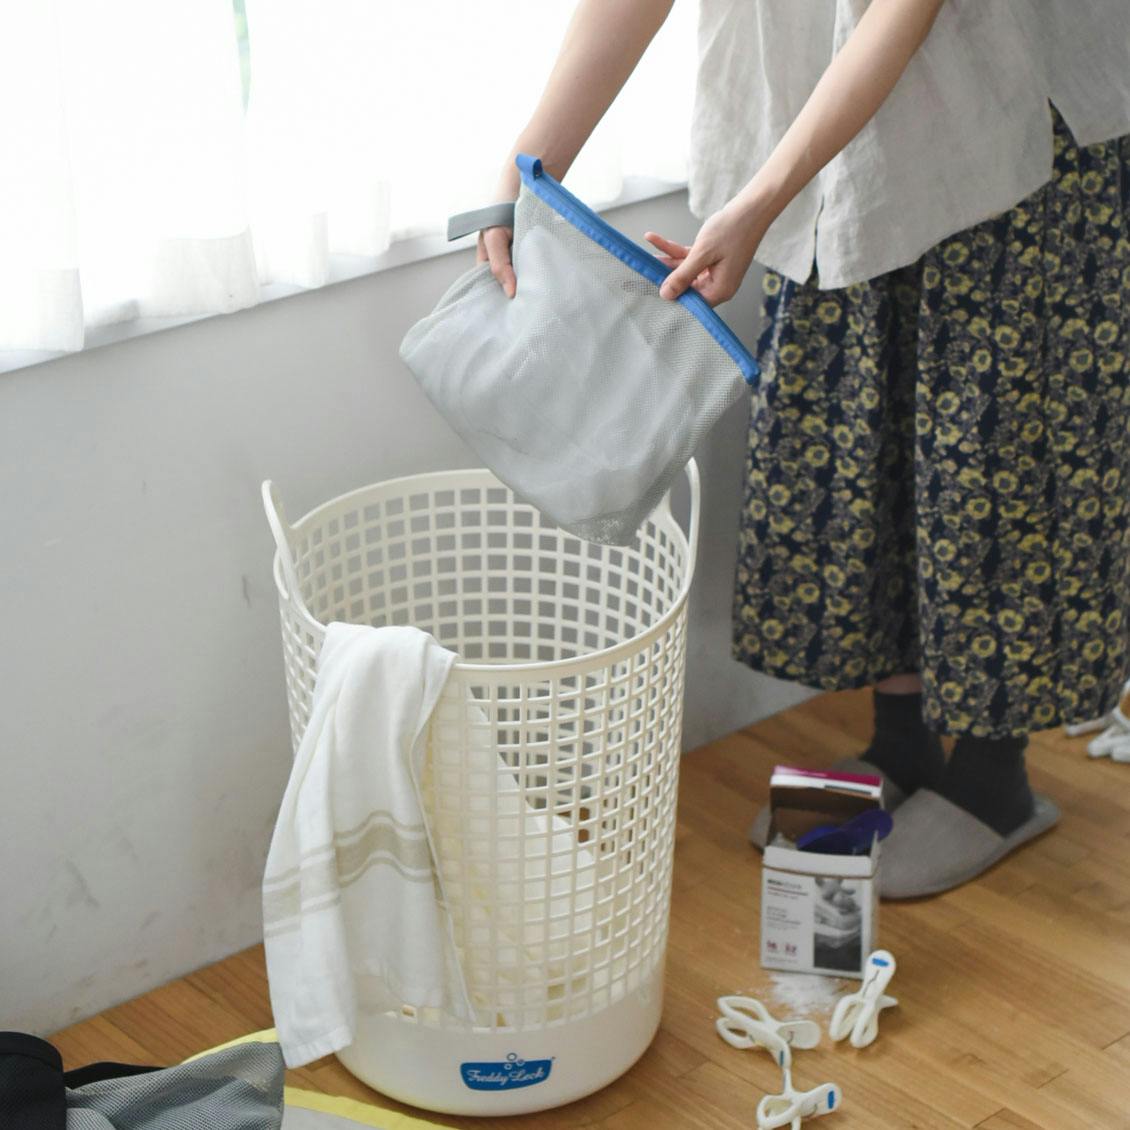 237円 【50%OFF!】 現代百貨 W D LAUNDRY ランドリーネット 筒型 洗濯ネット グレー